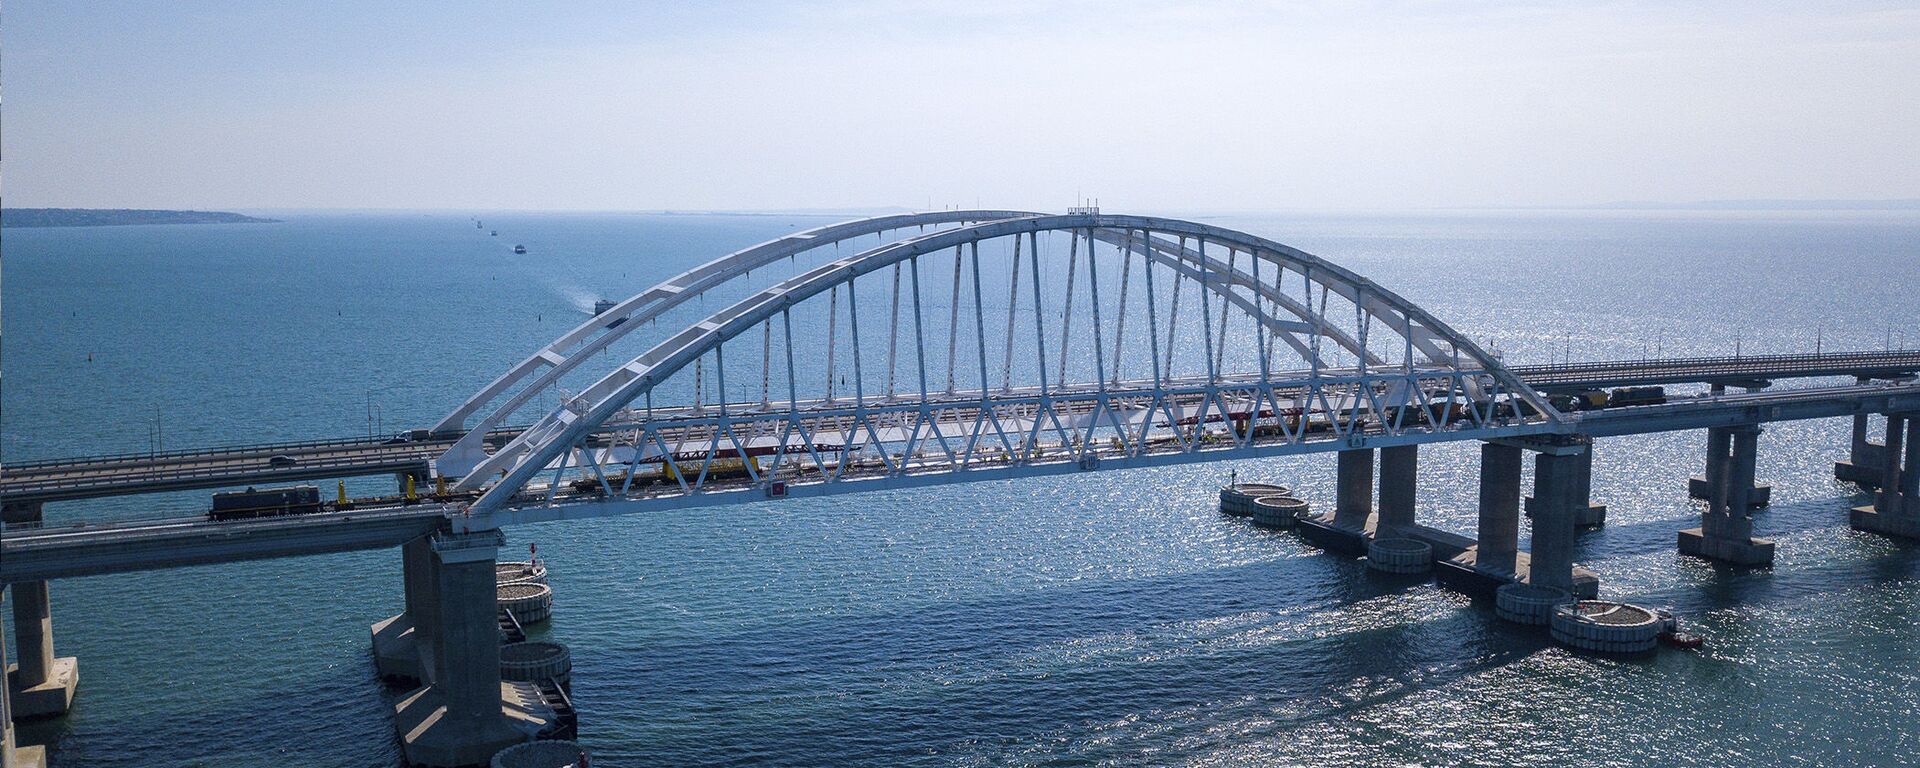 Крымский железнодорожный мост, архивное фото - Sputnik Lietuva, 1920, 12.03.2021